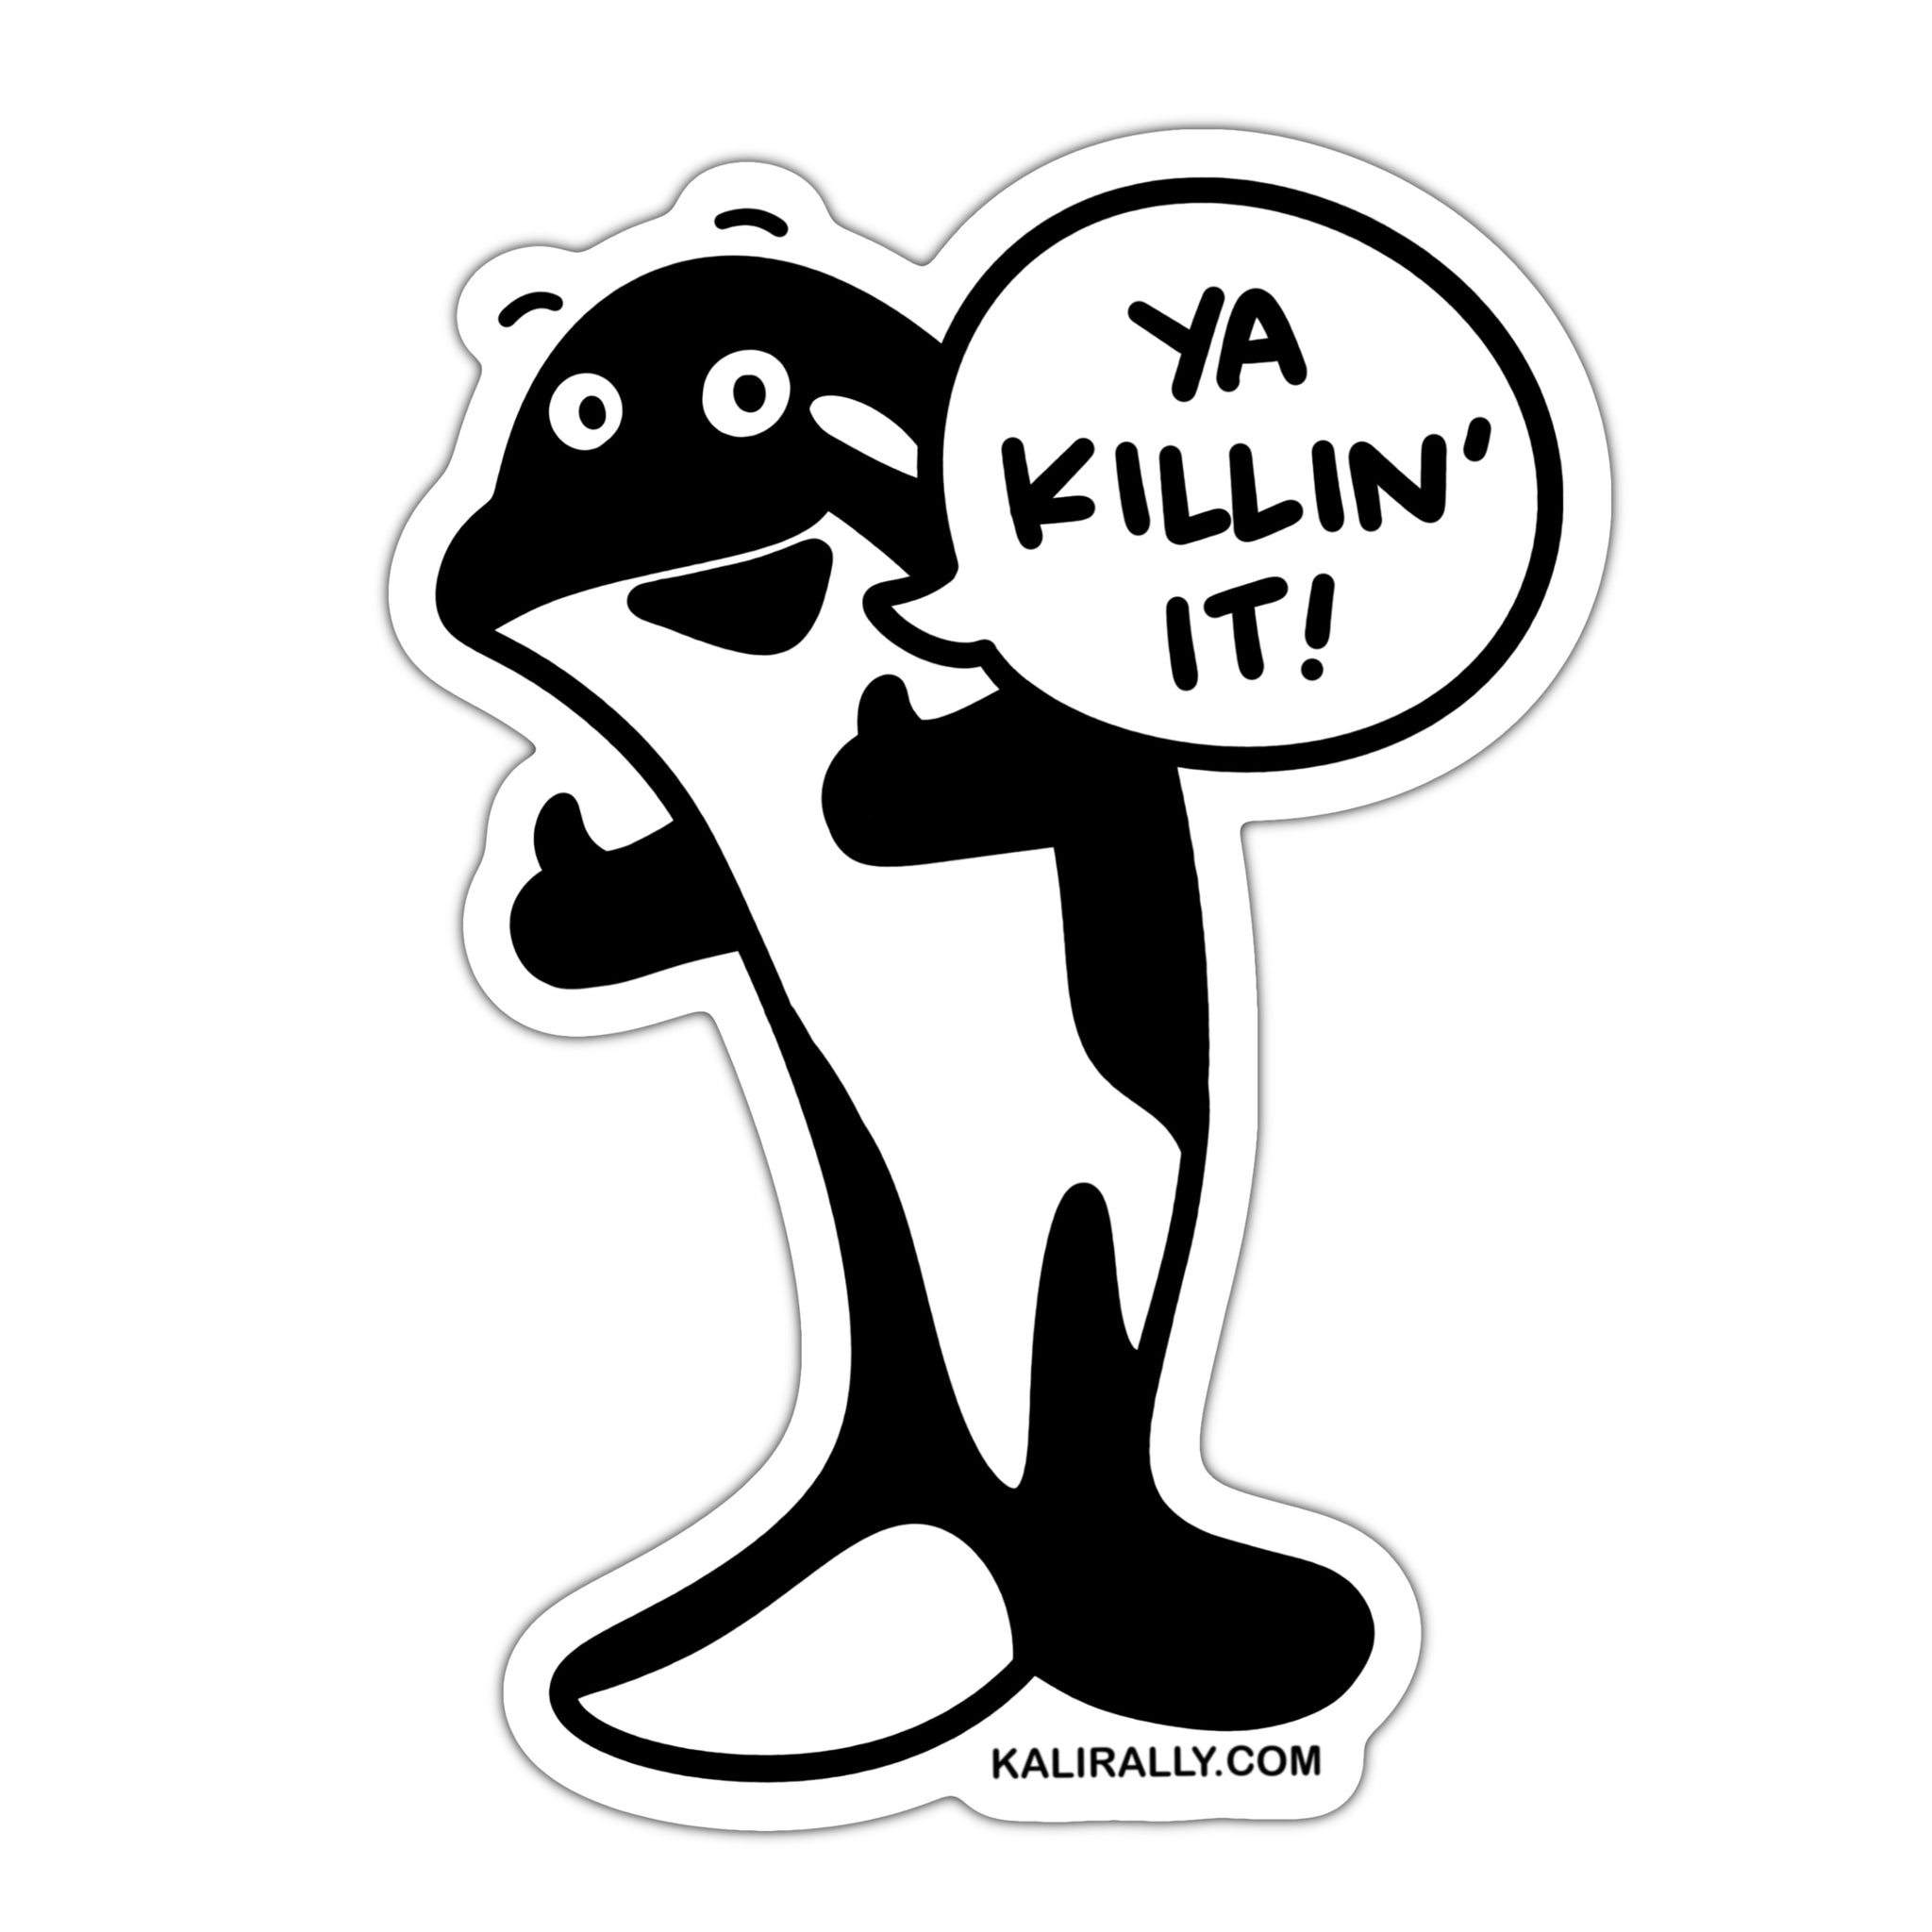 Ya killin' it killer whale sticker, funny support sticker, orca sticker, waterproof vinyl sticker